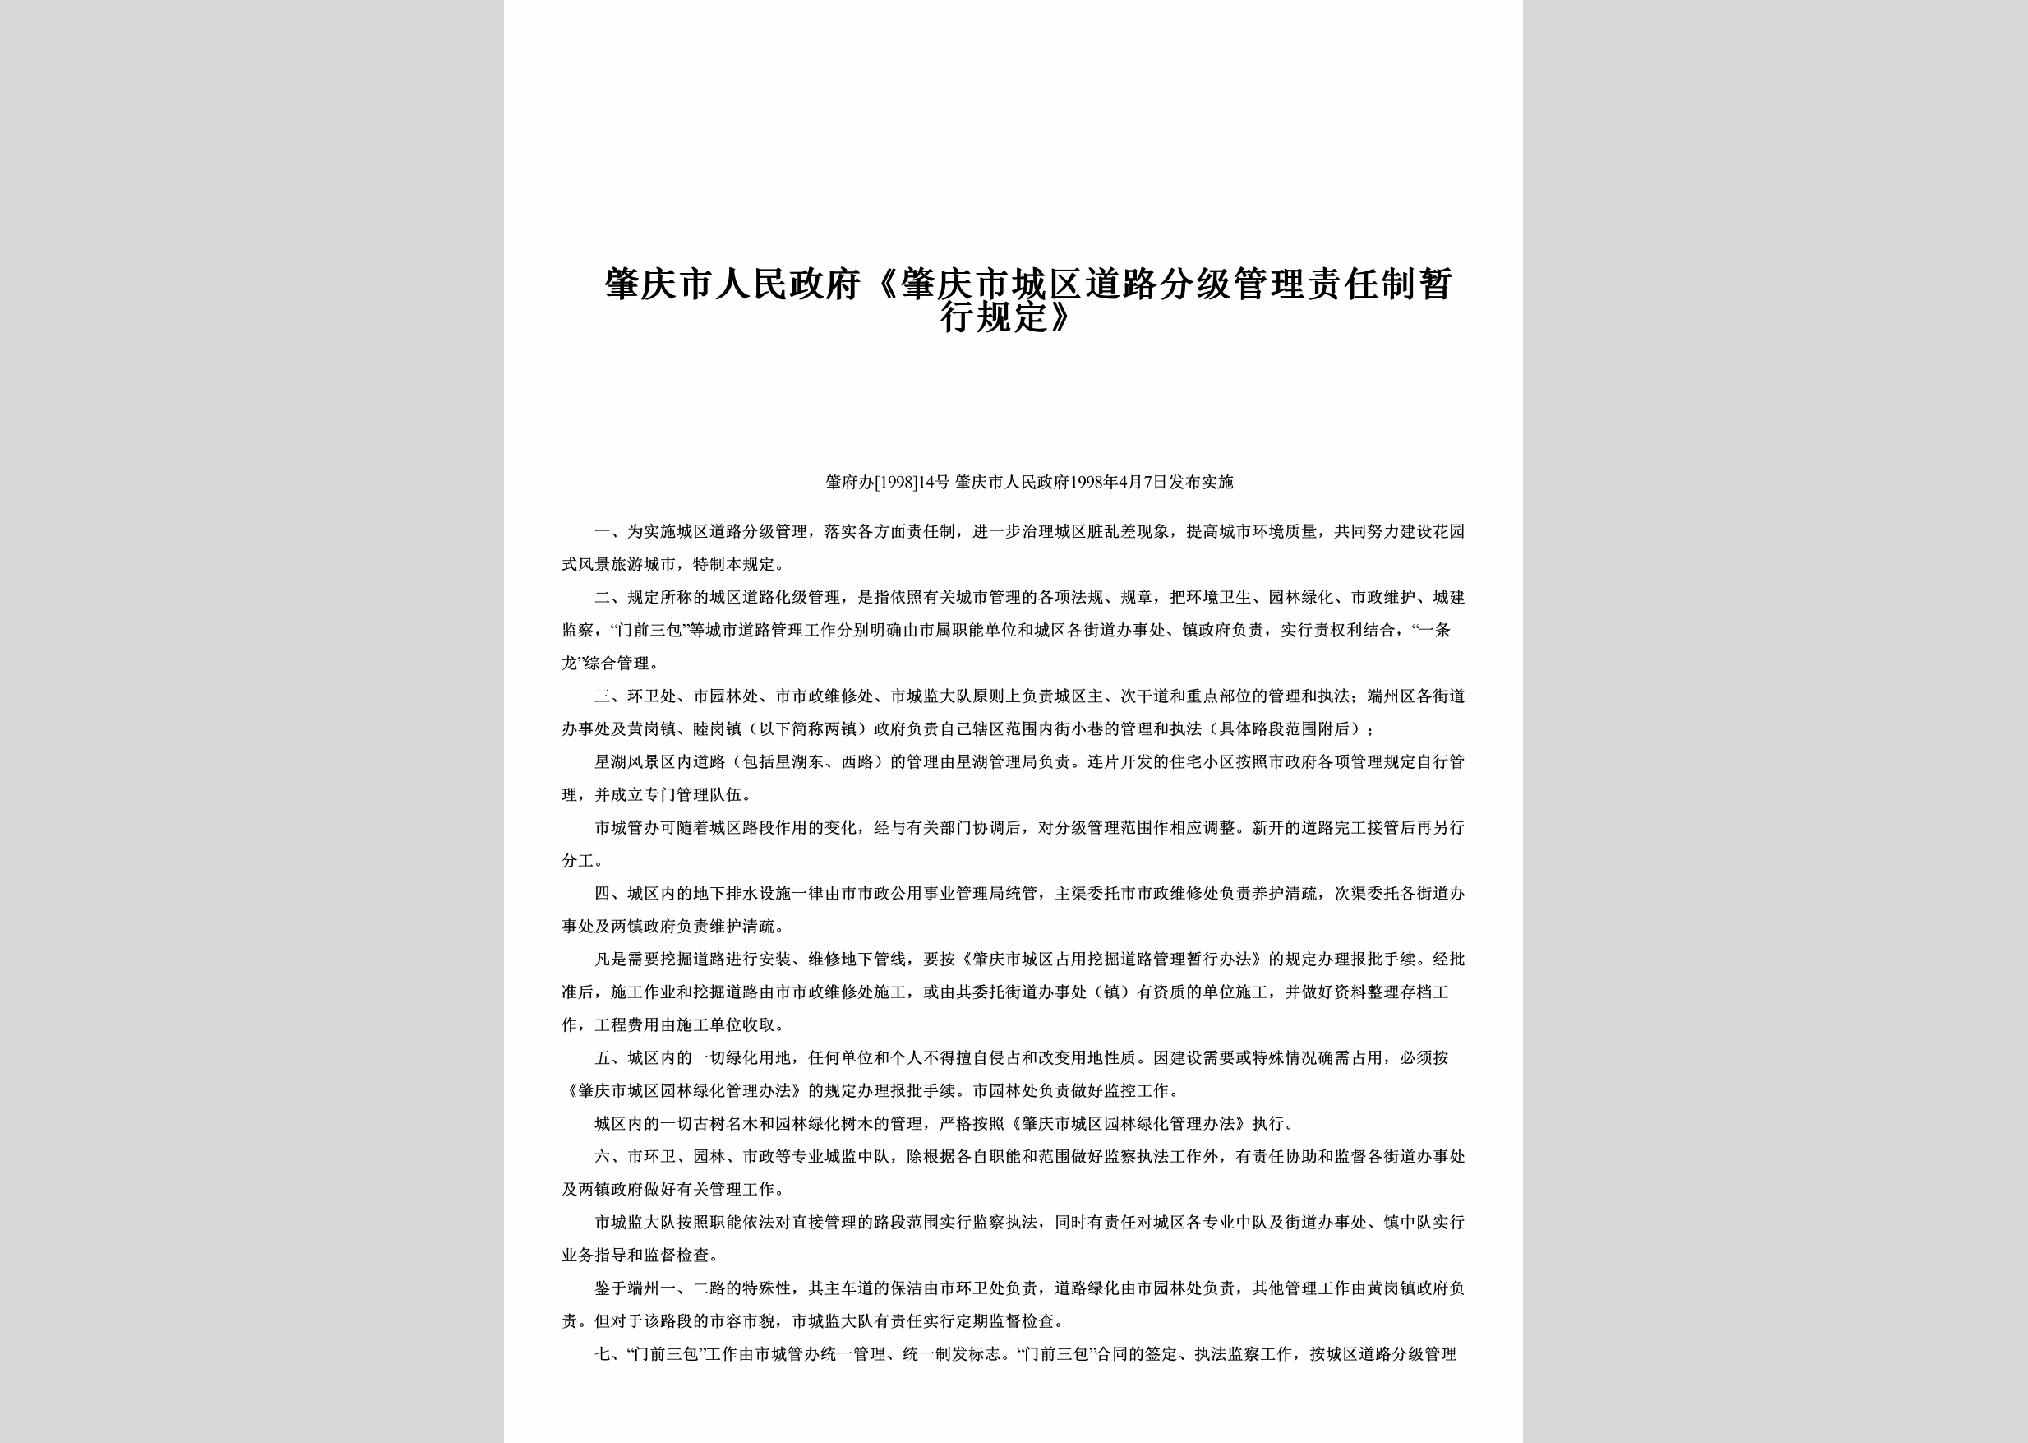 肇府办[1998]14号：《肇庆市城区道路分级管理责任制暂行规定》